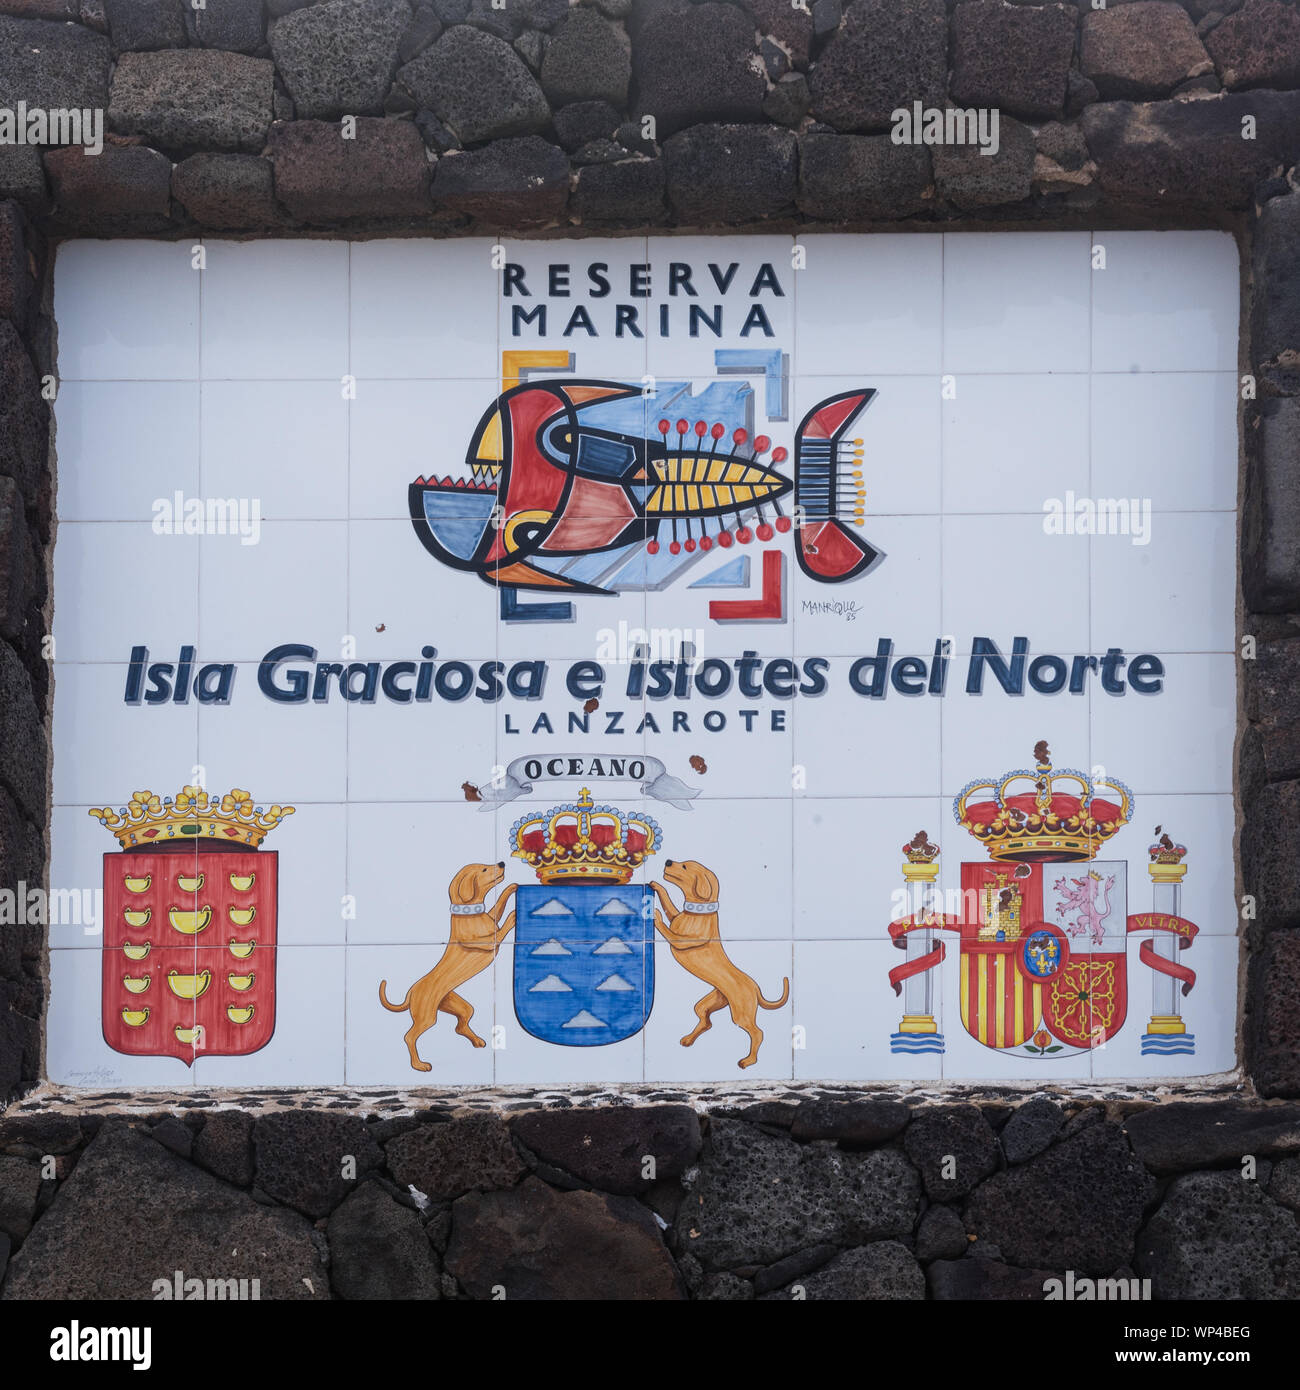 Arrieta, Lanzarote, Espagne 15 octobre 2018 : Inscrivez-vous pour pour la réserve marine de l 'île de Graciosa et les petites îles du nord" avec une peinture de poisson Banque D'Images